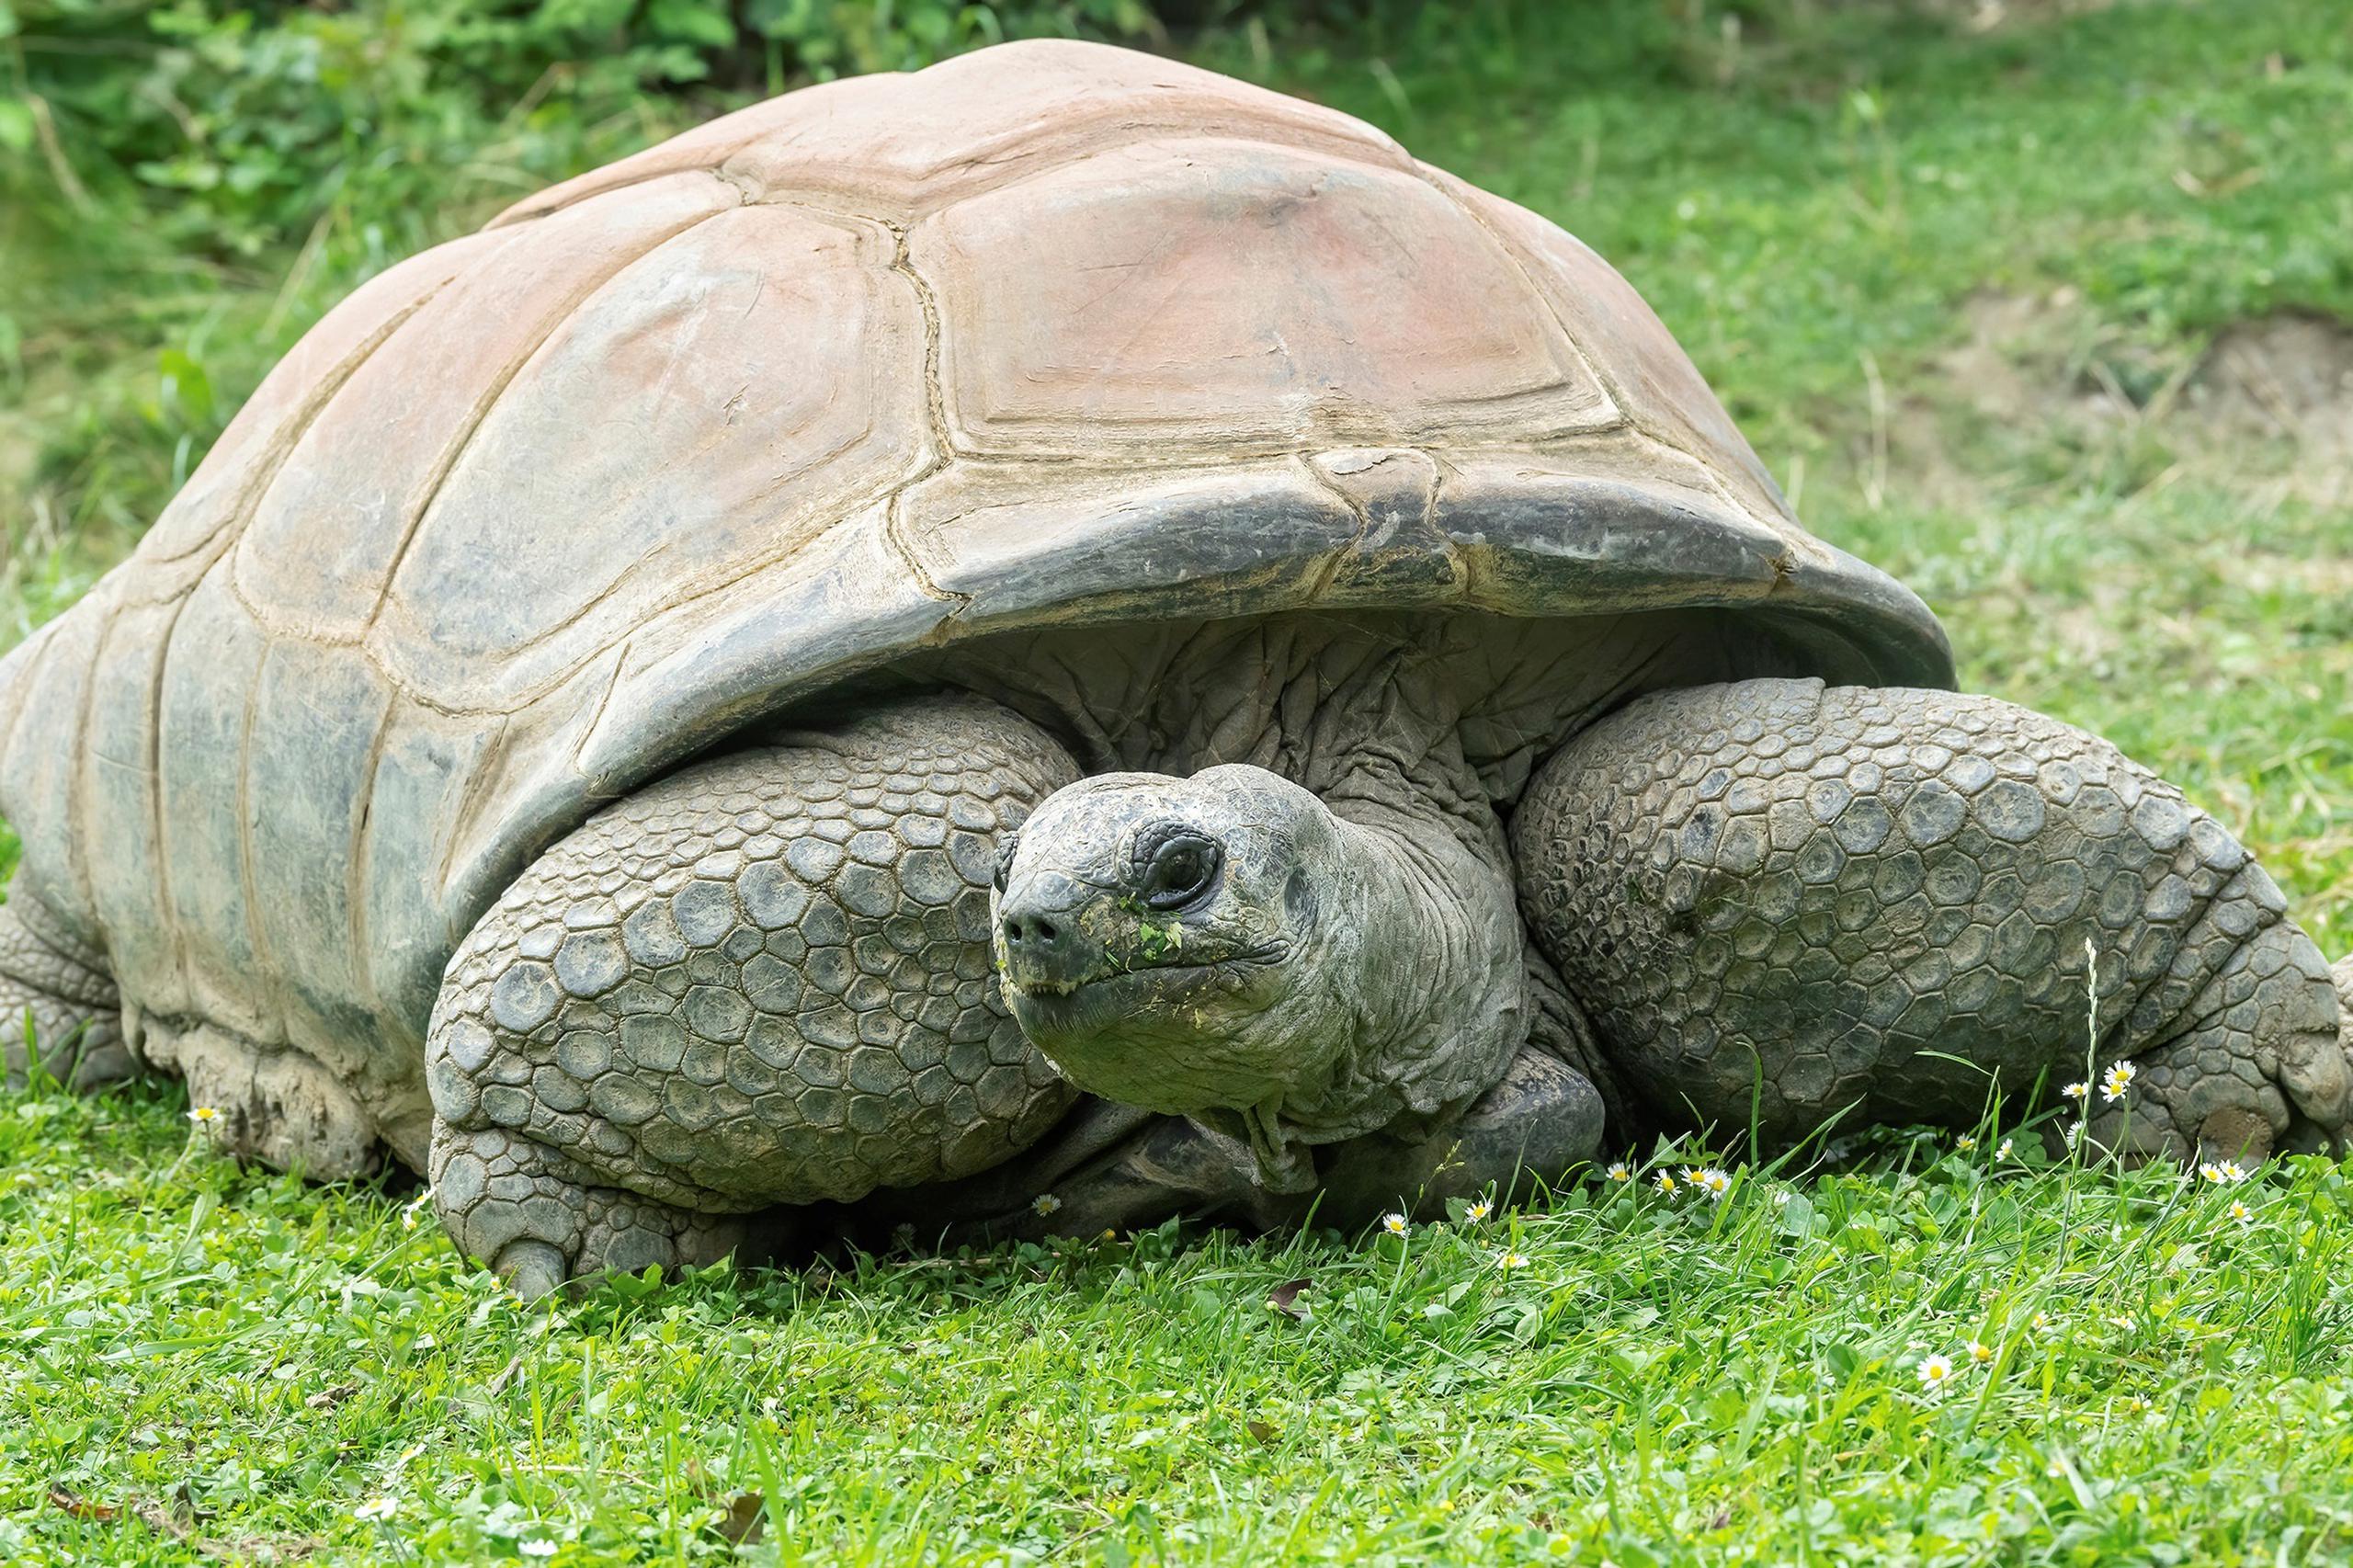 La tortuga gigante de Seychelles Schurli en su terrario del Zoológico de Schönbrunn (Viena). Dicho zoológico, abierto desde 1752, anunció este martes el fallecimiento de su habitante más longevo, una tortuga gigante de Seychelles llamada Schurli, que vivía en este parque desde el año 1953.